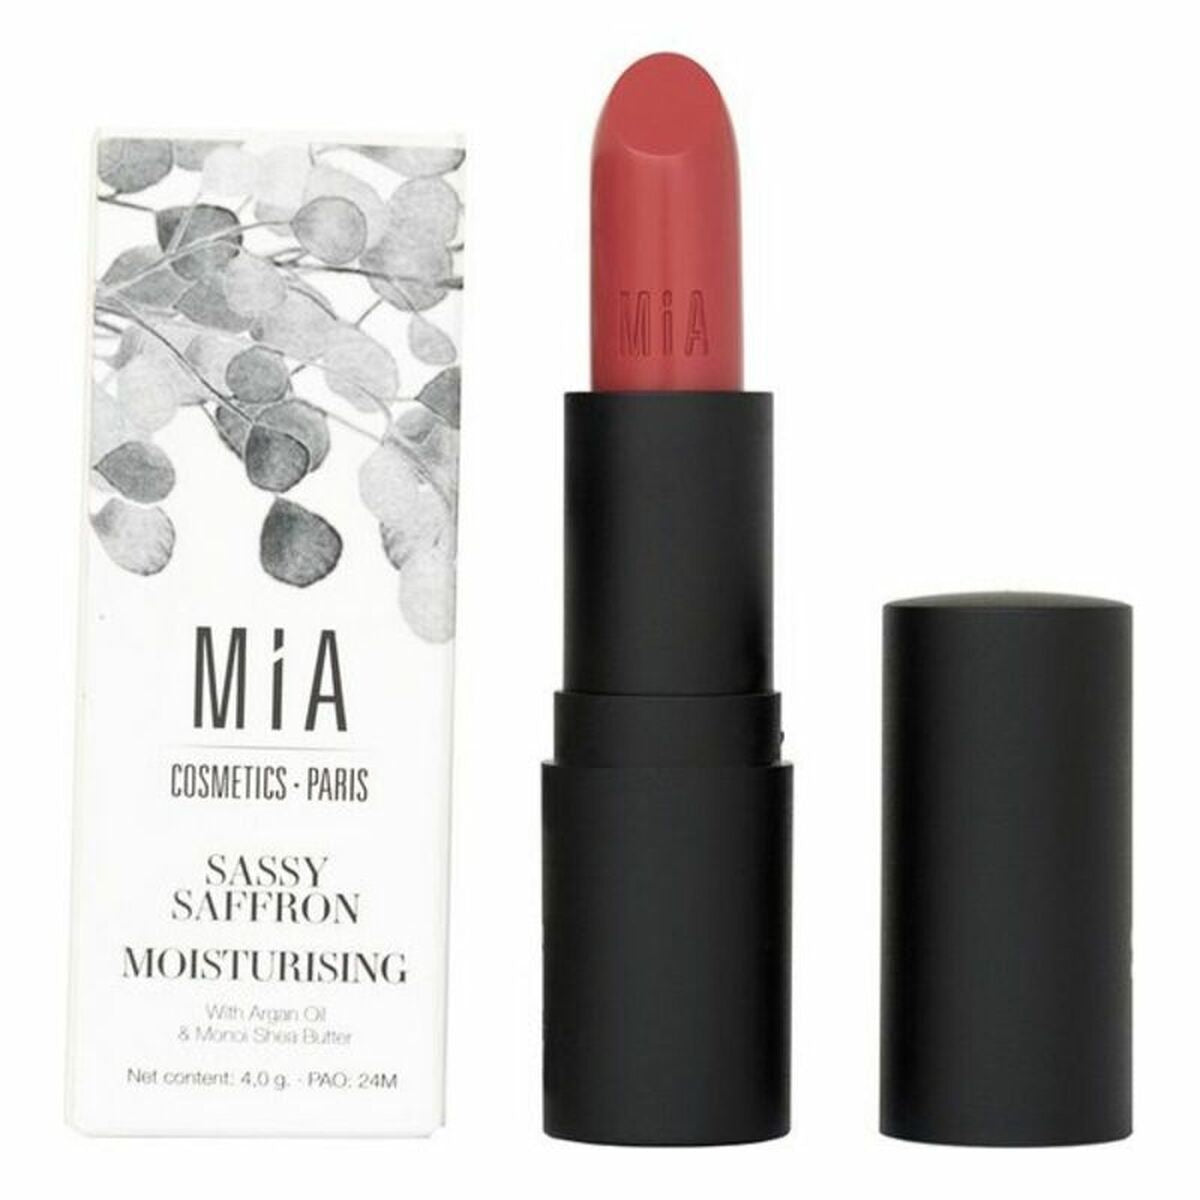 Feuchtigkeitsspendender Lippenstift Mia Cosmetics Paris 511-Sassy Saffron (4 g) - CA International  